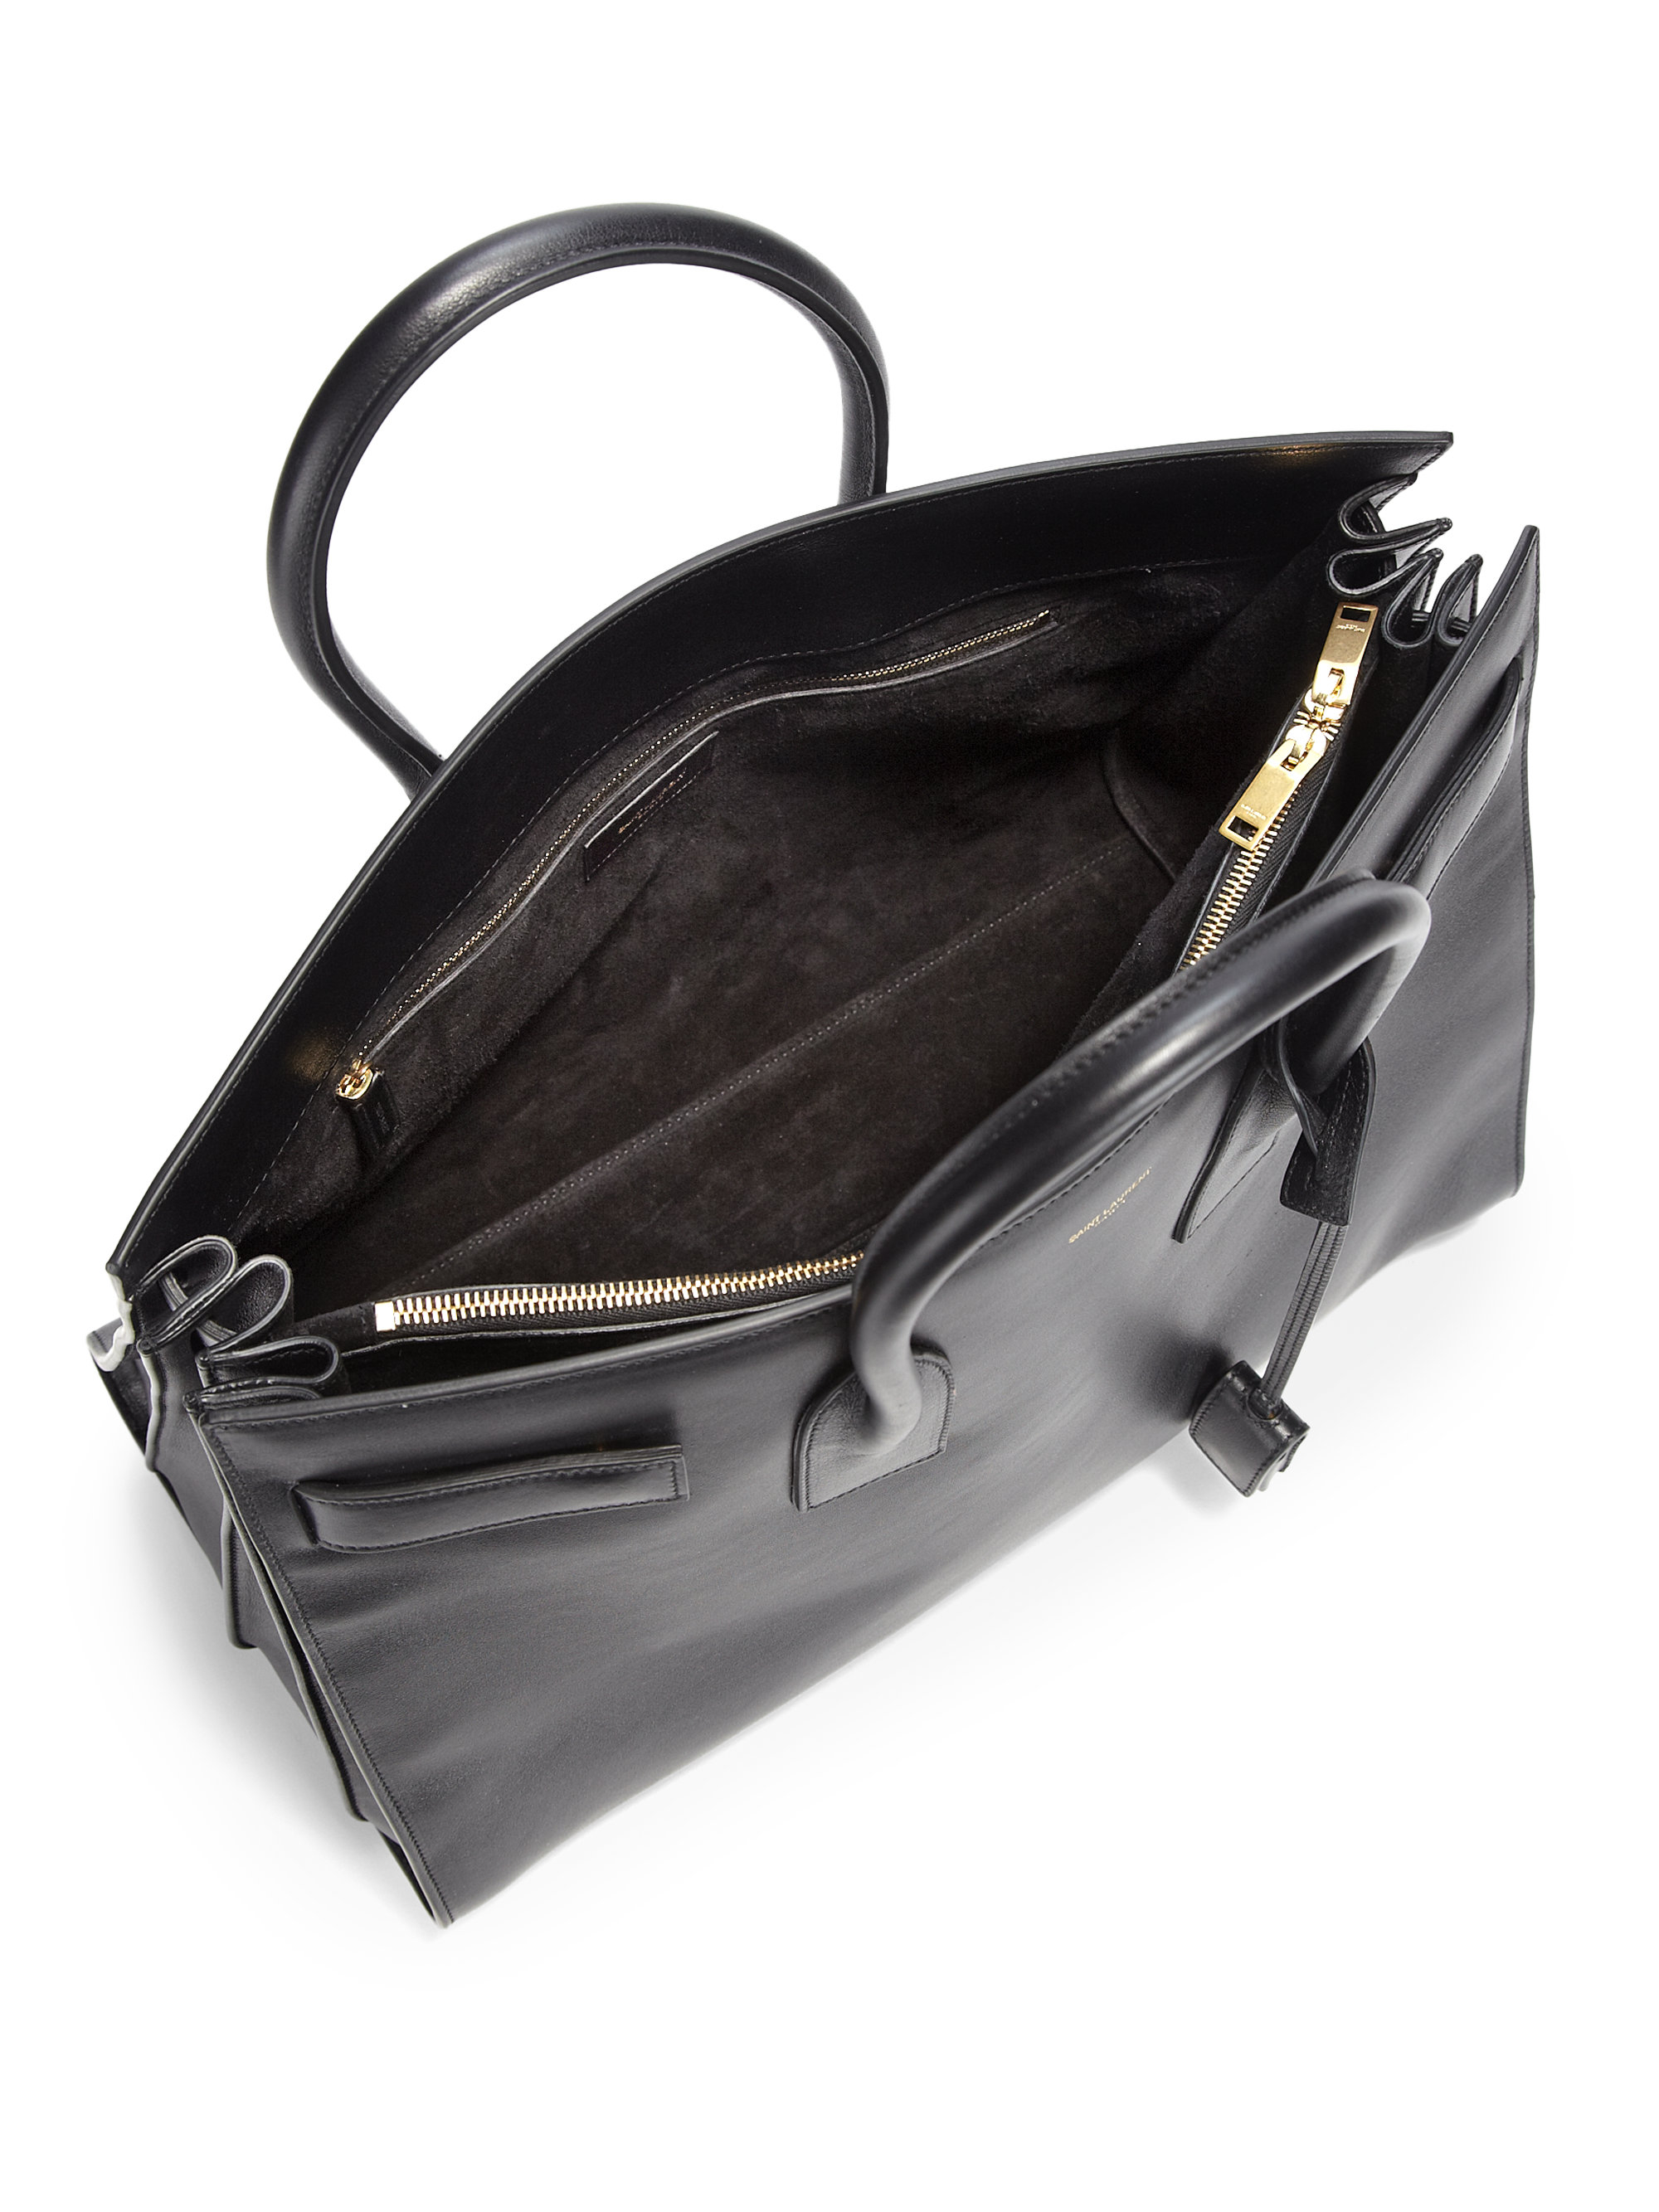 yves saint laurent chyc leather shoulder bag - sac de jour small bicolor satchel bag, white/black